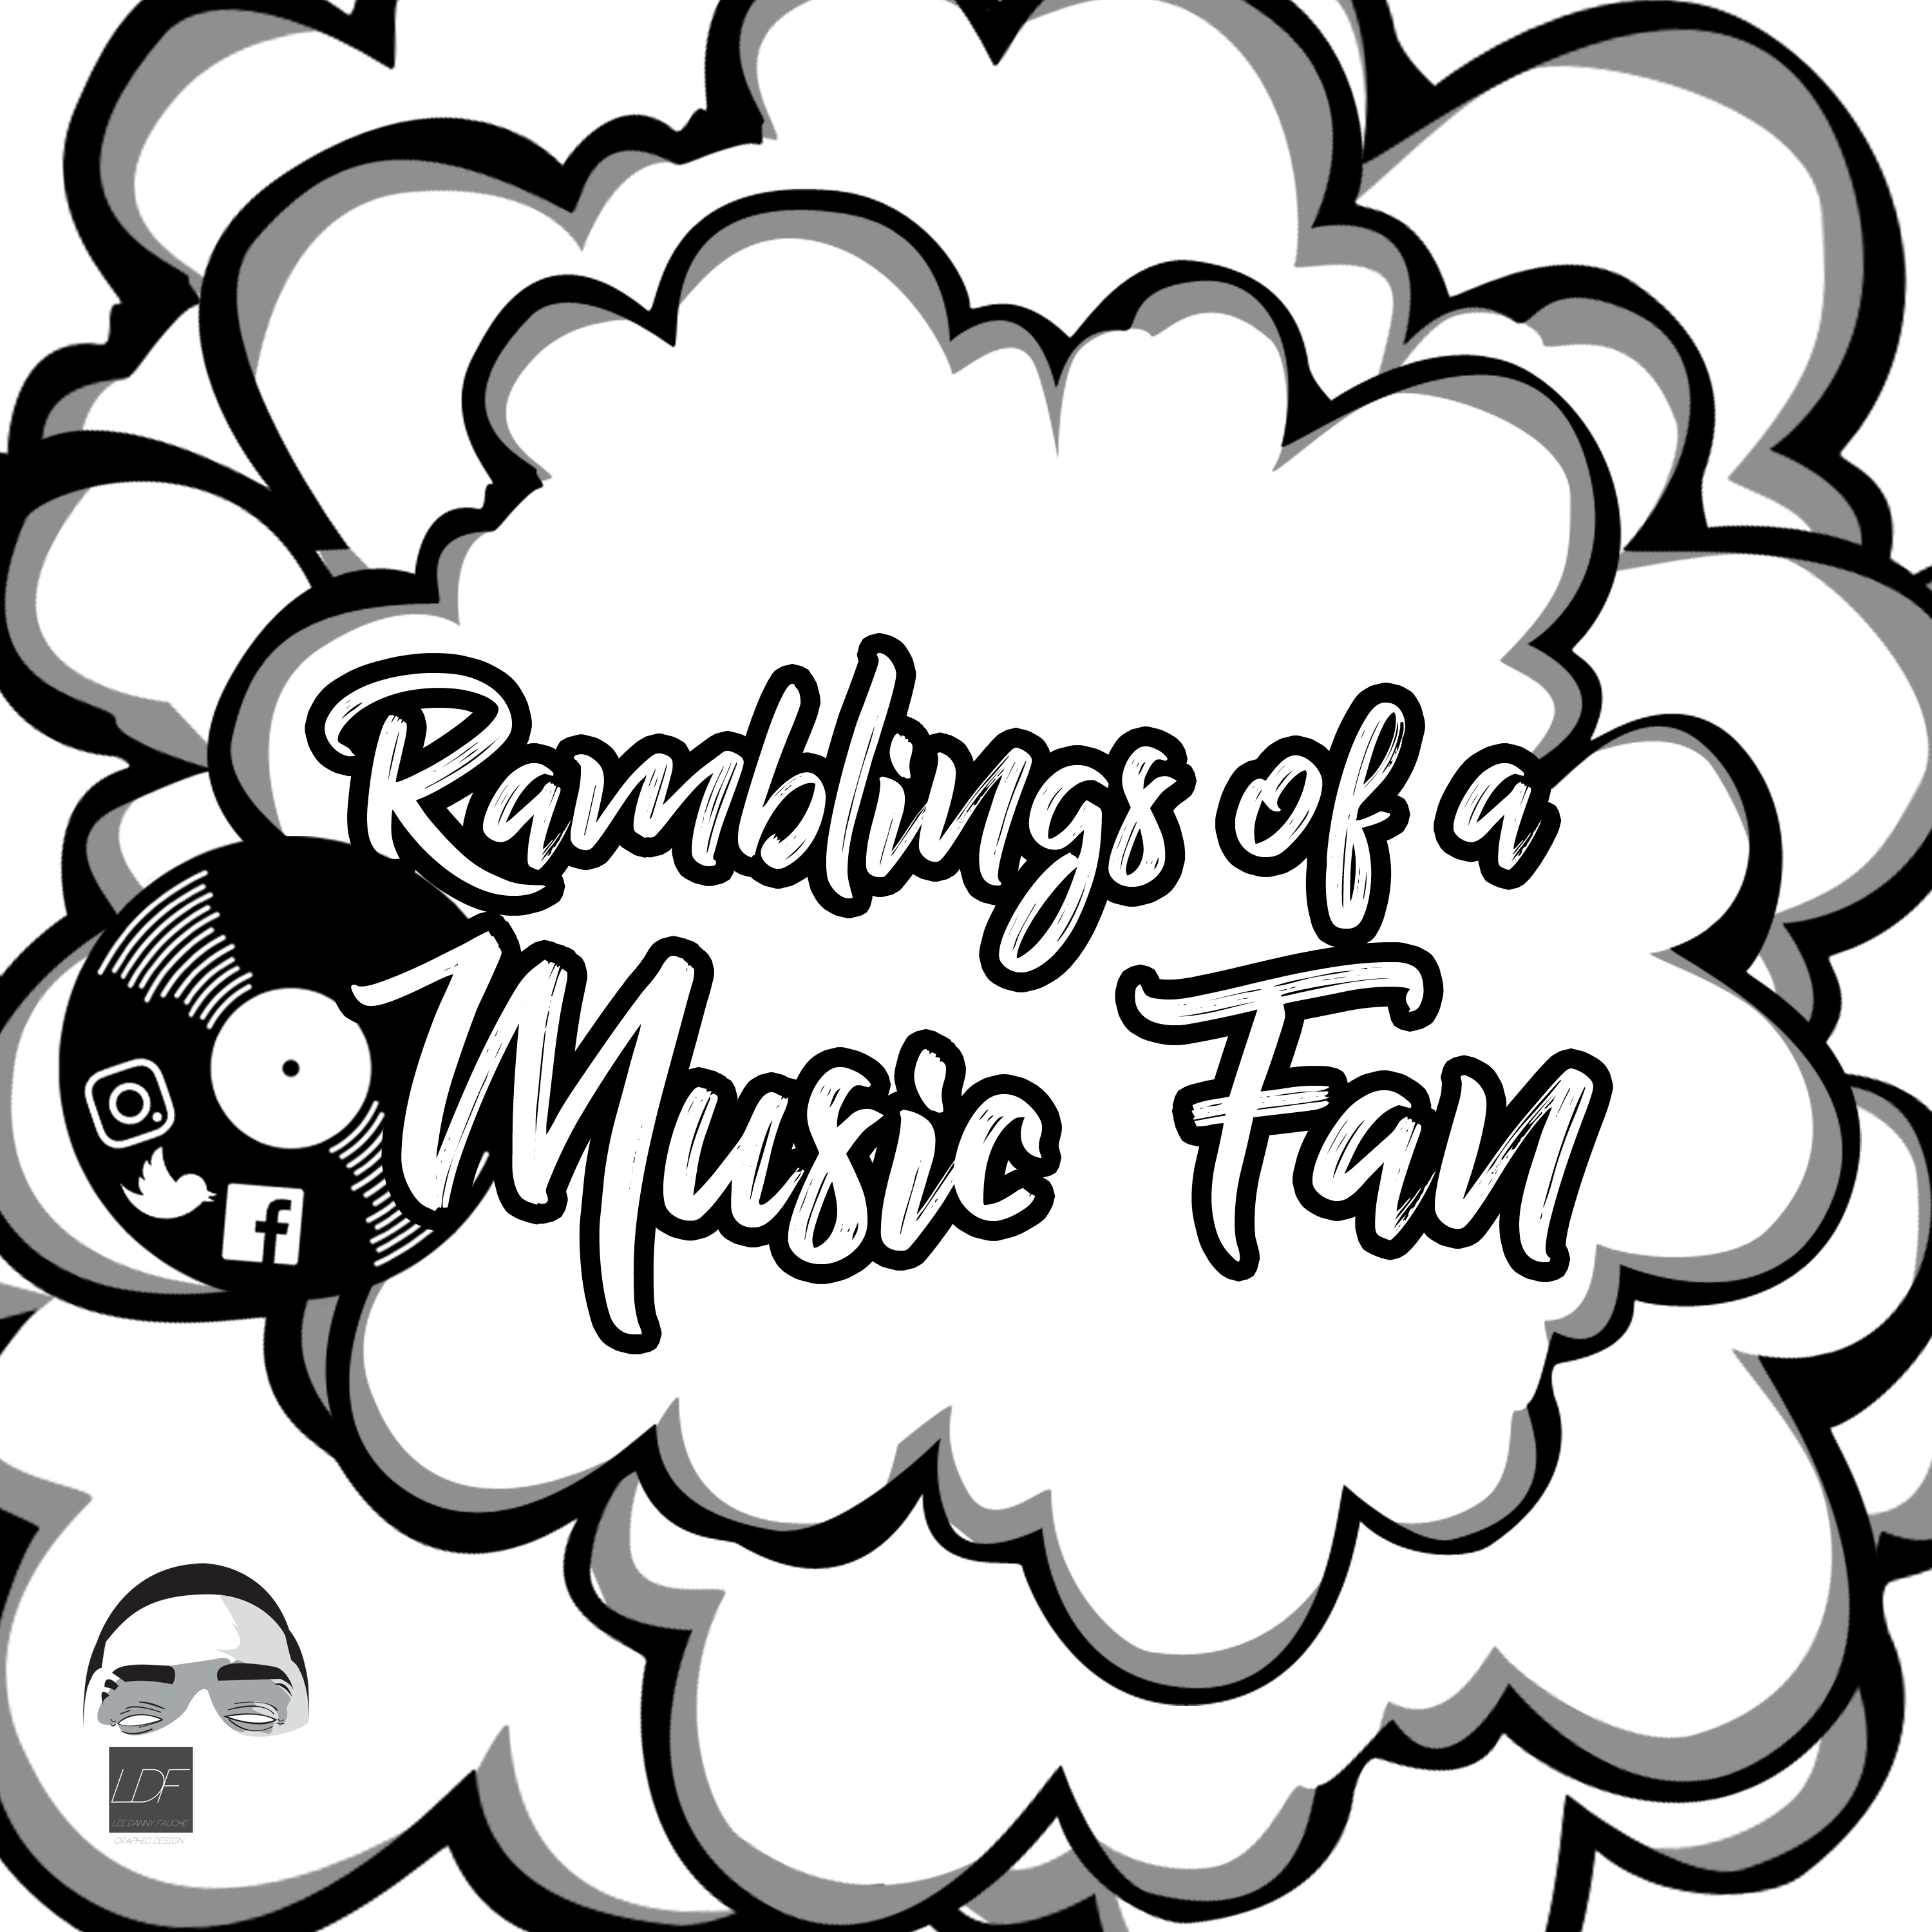 Ramblings of a music fan